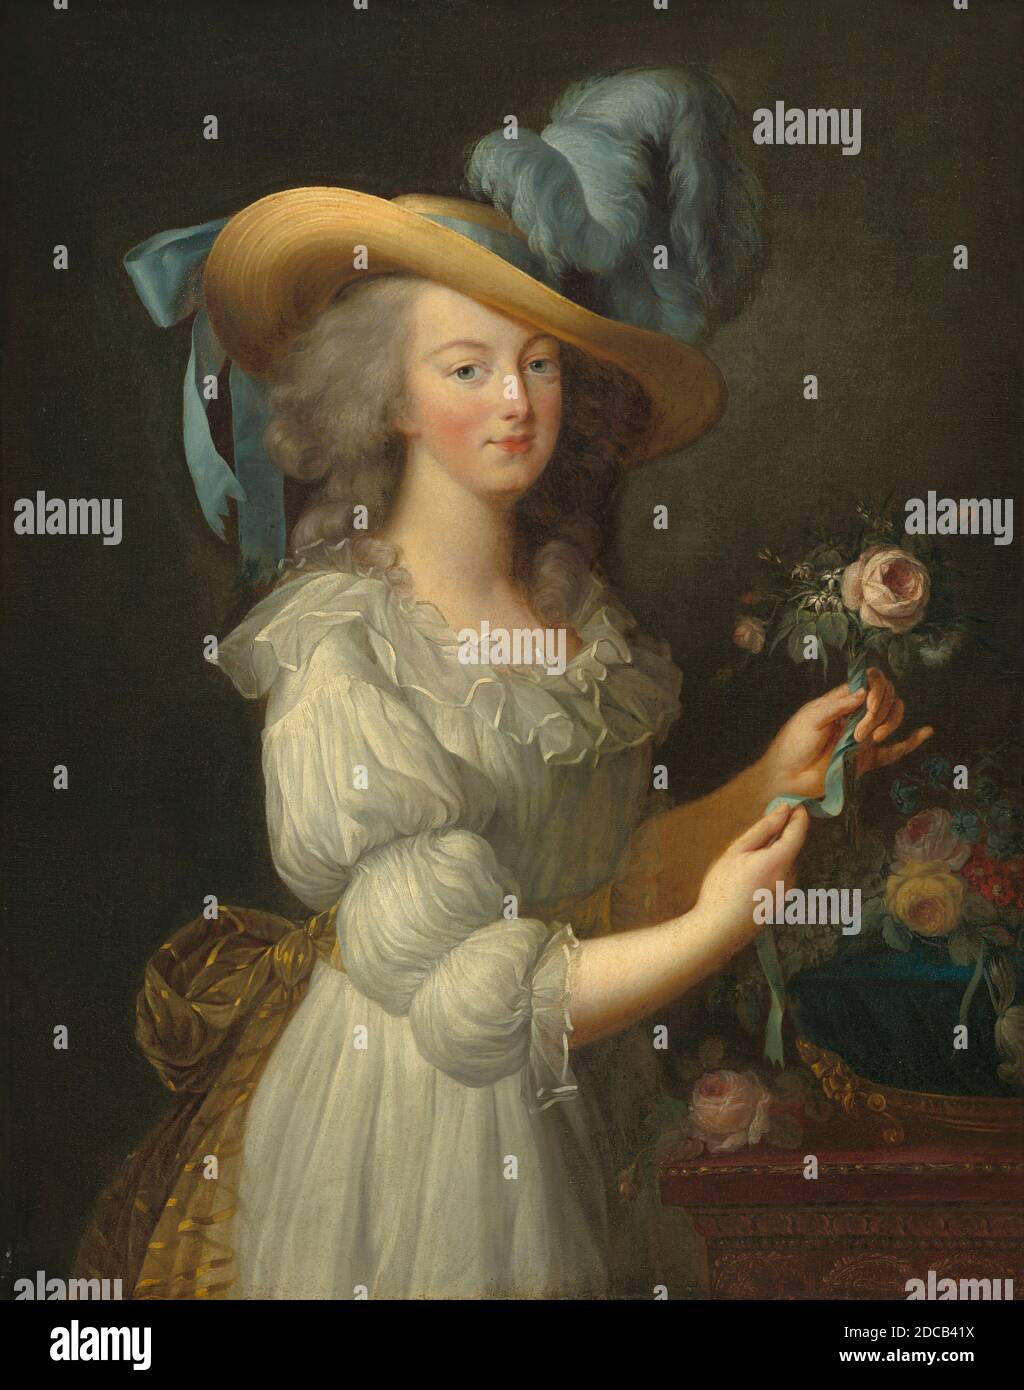 Artiste anonyme, (peintre), Élisabeth Louise Vigée le Brun, (artiste après), Français, 1755 - 1842, Marie-Antoinette, après 1783, huile sur toile, total: 92.7 x 73.1 cm (36 1/2 x 28 3/4 po), encadré: 137.8 x 106.4 cm (54 1/4 x 41 7/8 po Banque D'Images